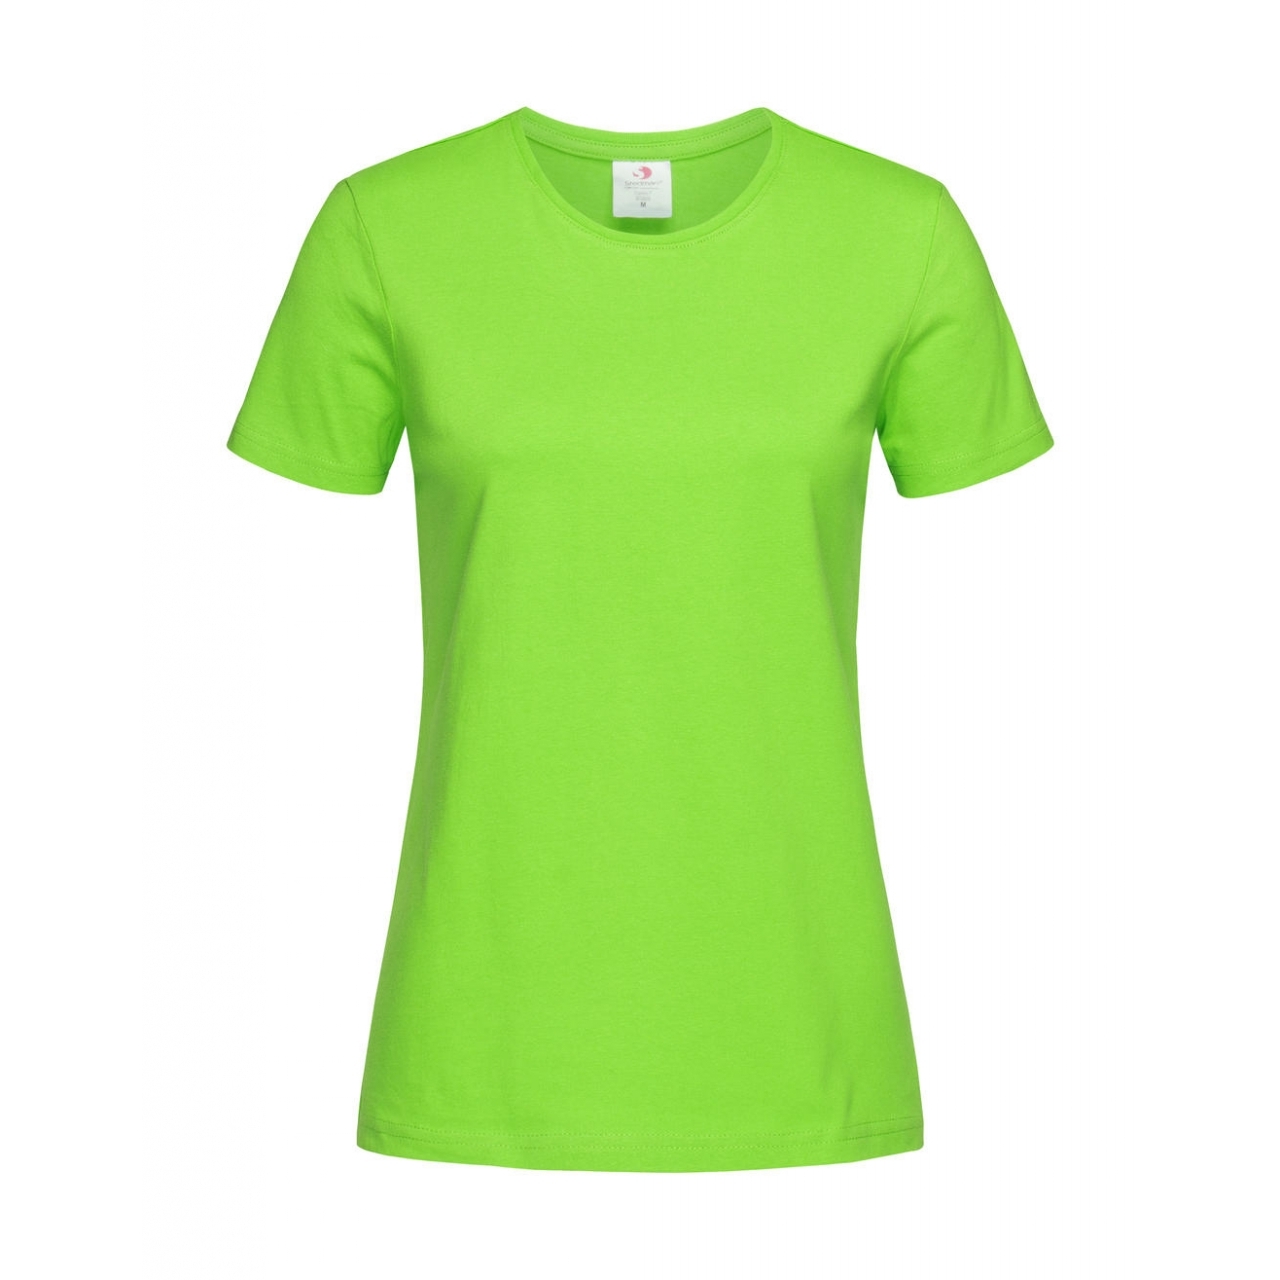 Tričko dámské Stedman Fitted s kulatým výstřihem - světle zelené, XL